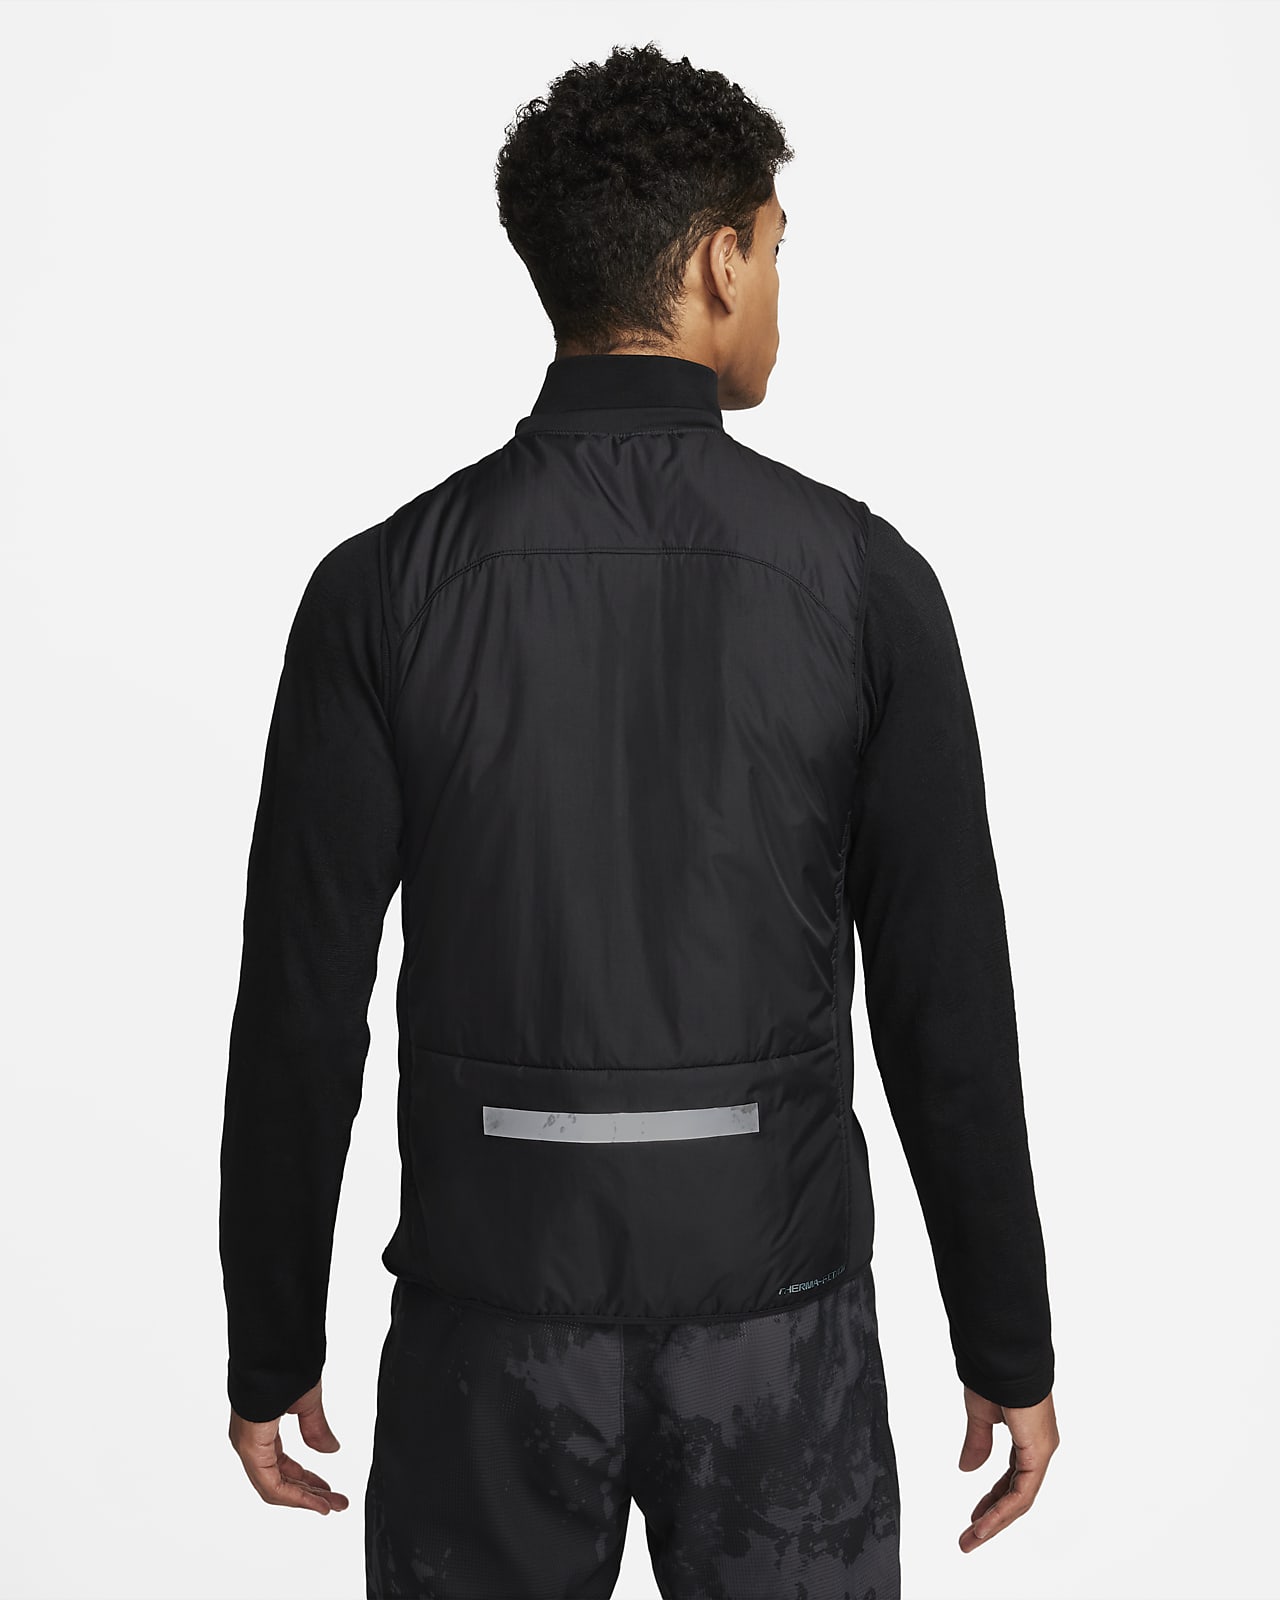 Cette veste de running Nike permet de faire du sport sans transpirer (ou  presque)